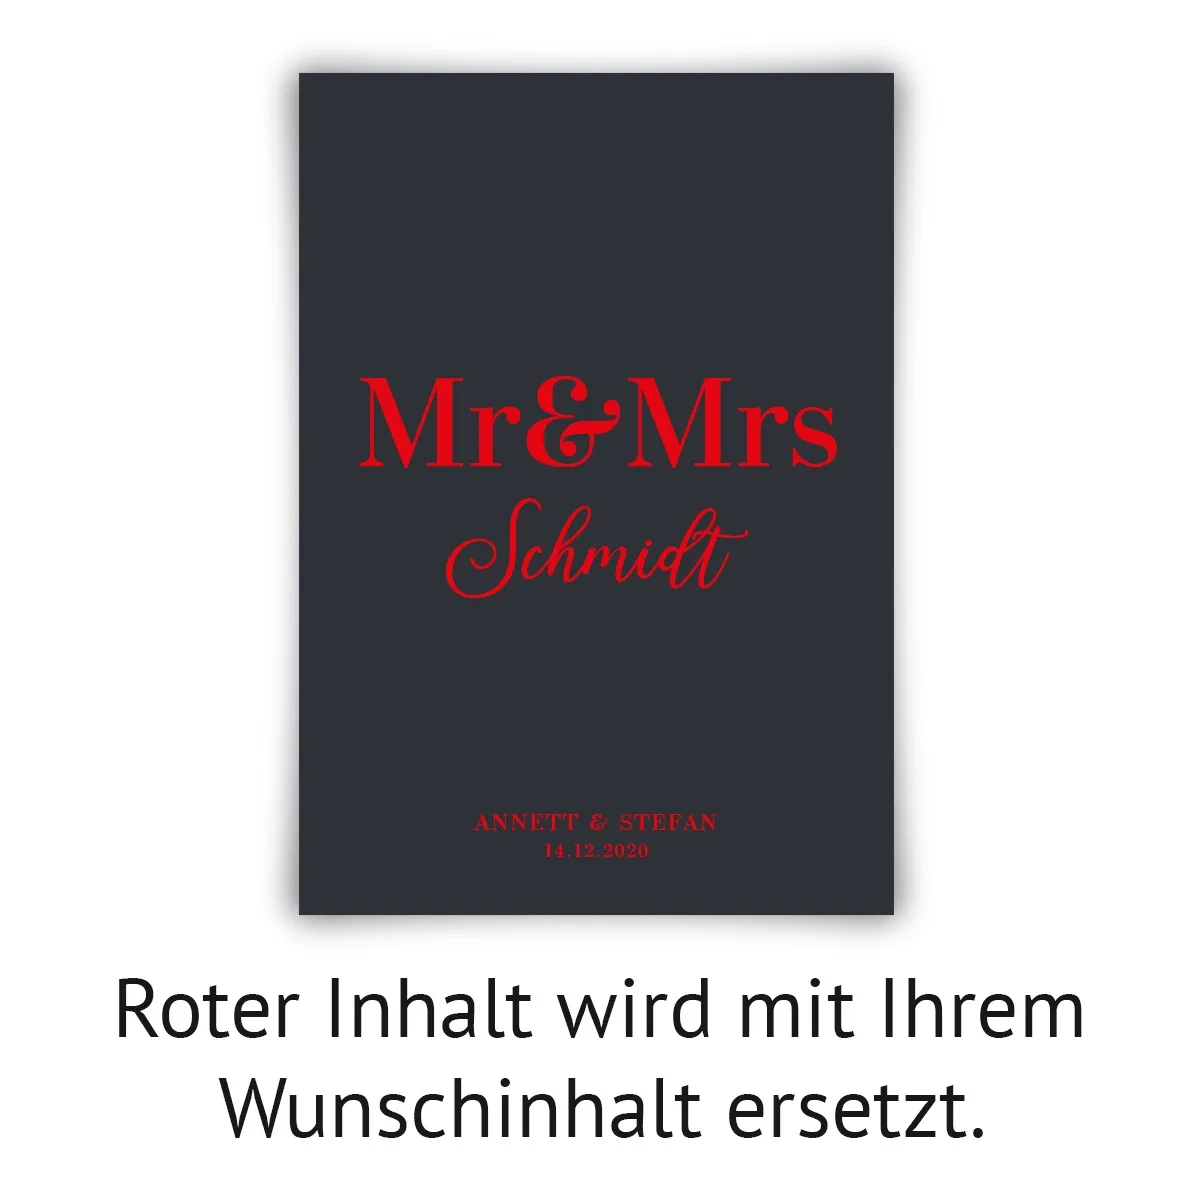 Personalisiertes Kunstdruck Poster mit Heißfolienprägung - Mr & Mrs